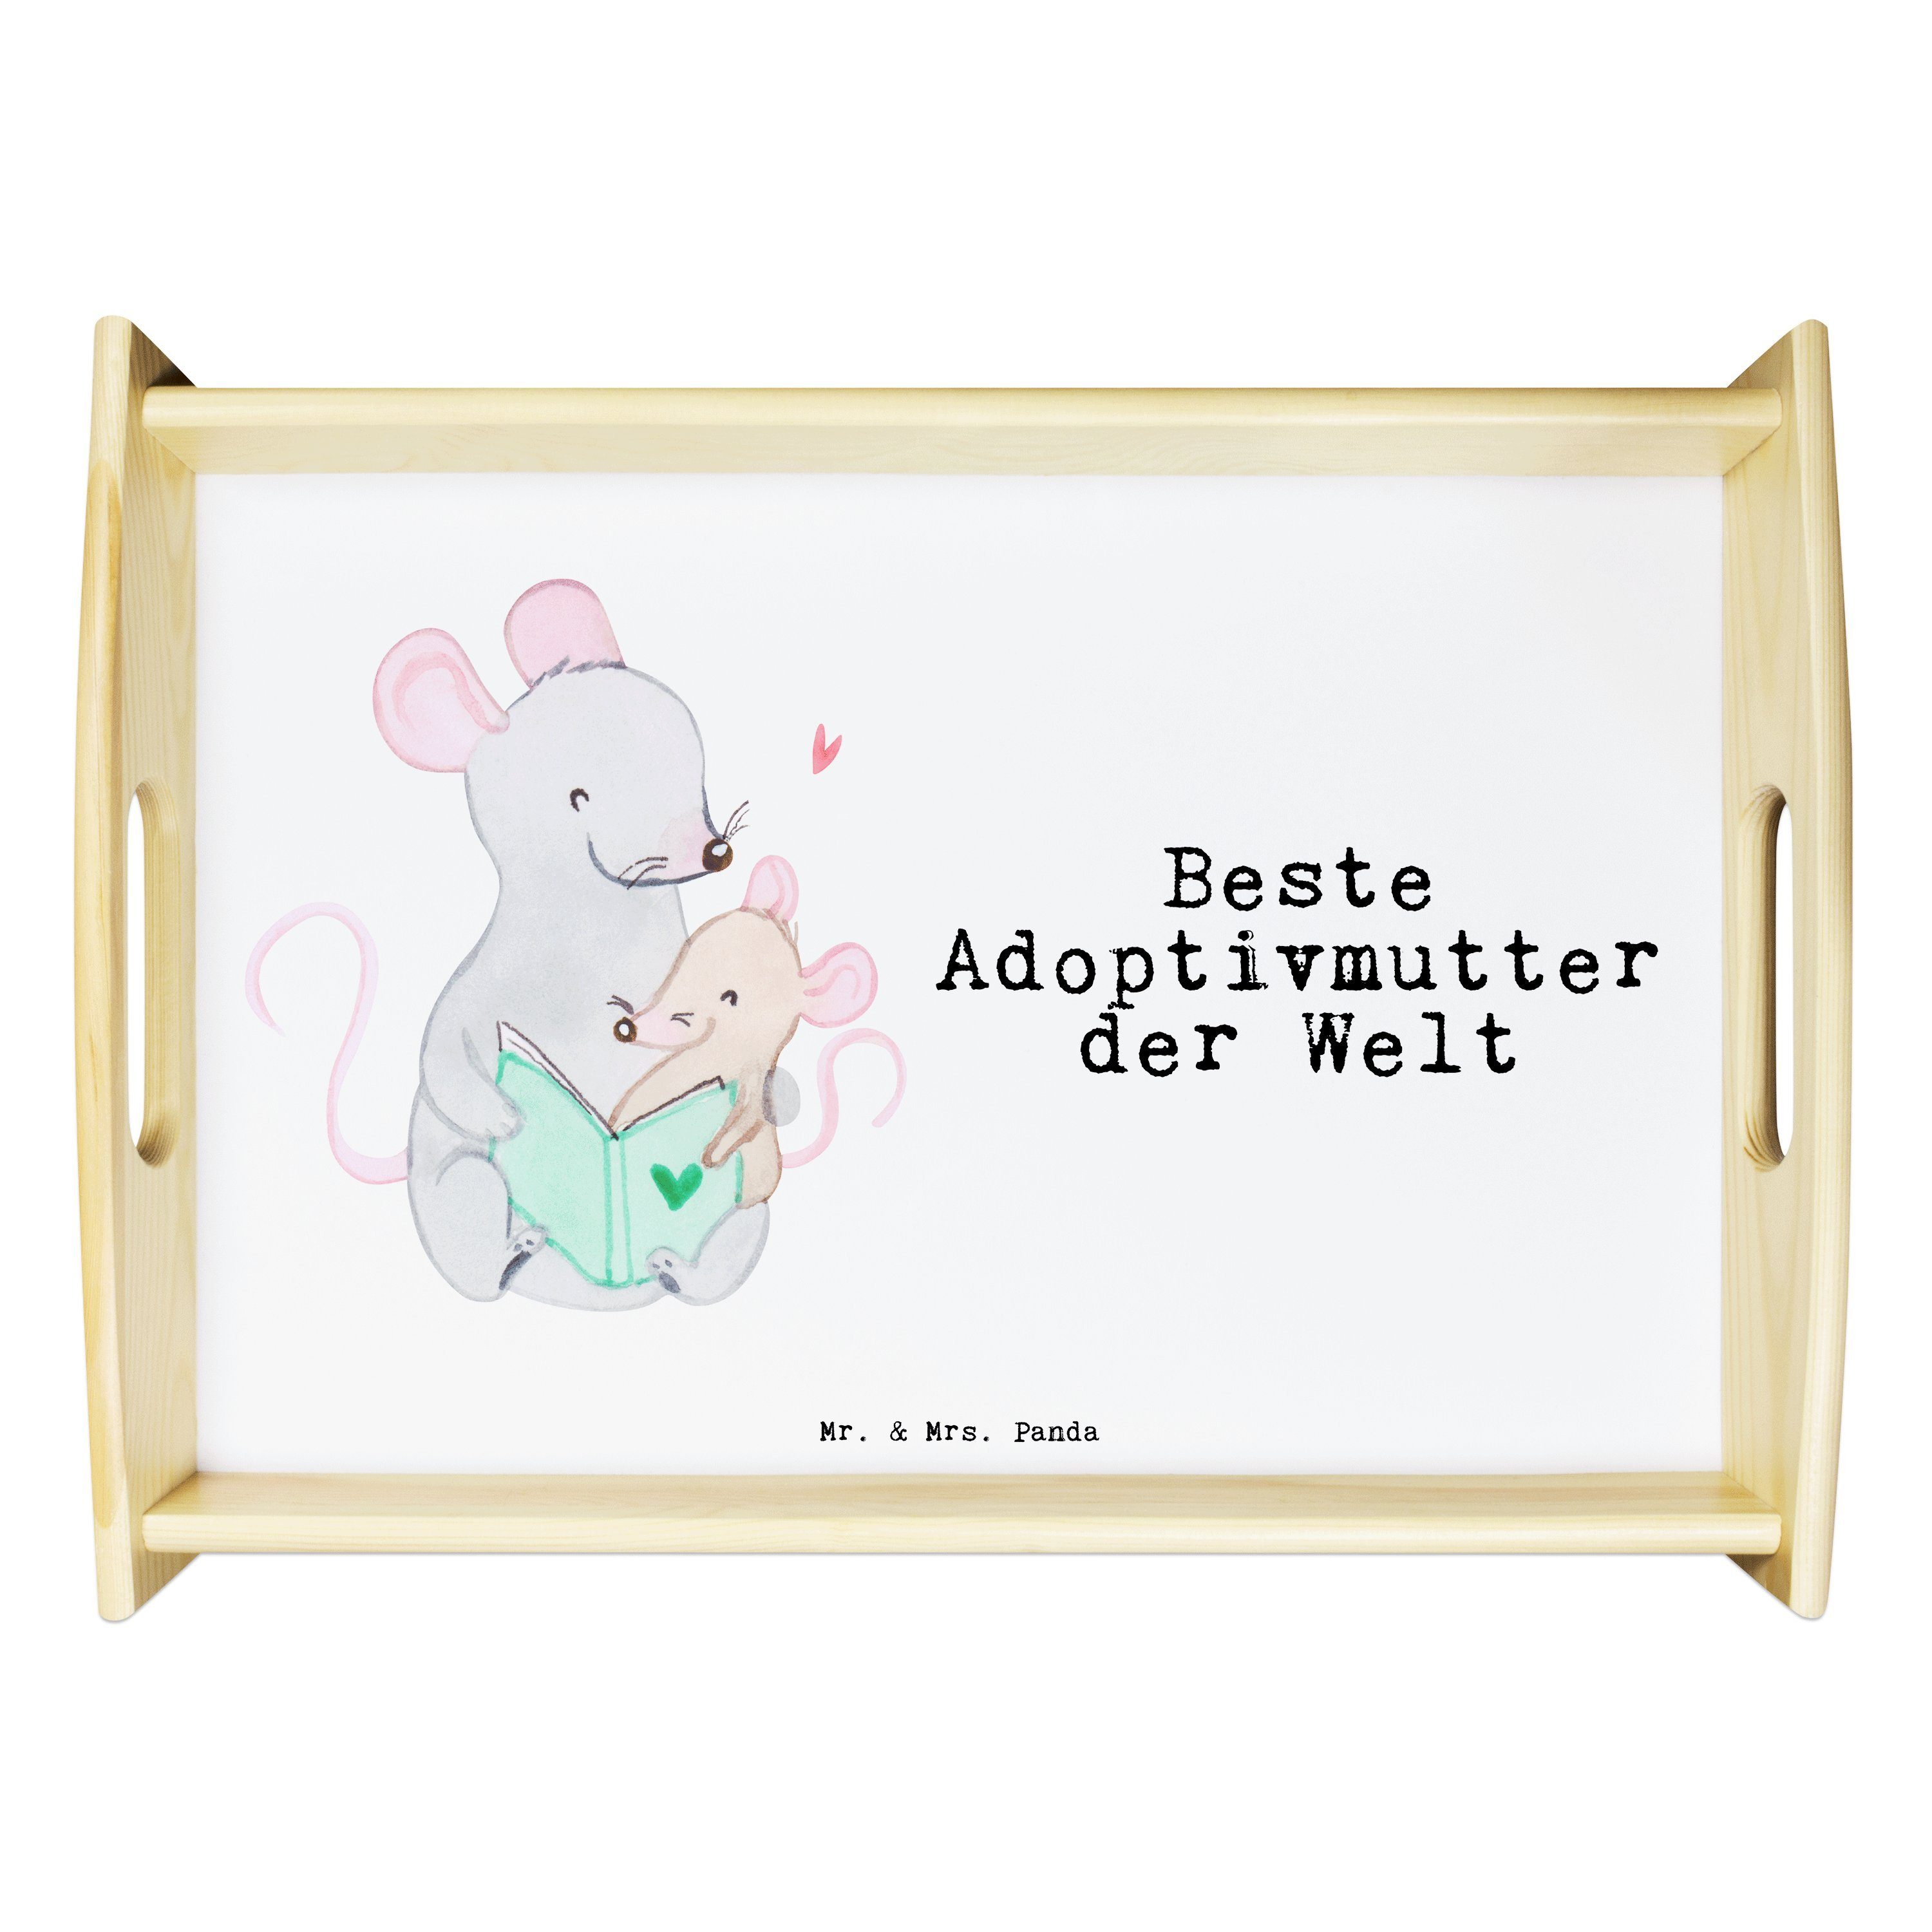 Welt Mr. Geschenk, der Mrs. adoptiert, - Adoptivmutter Maus Holzt, Weiß & Panda - (1-tlg) Beste Echtholz Tablett lasiert,